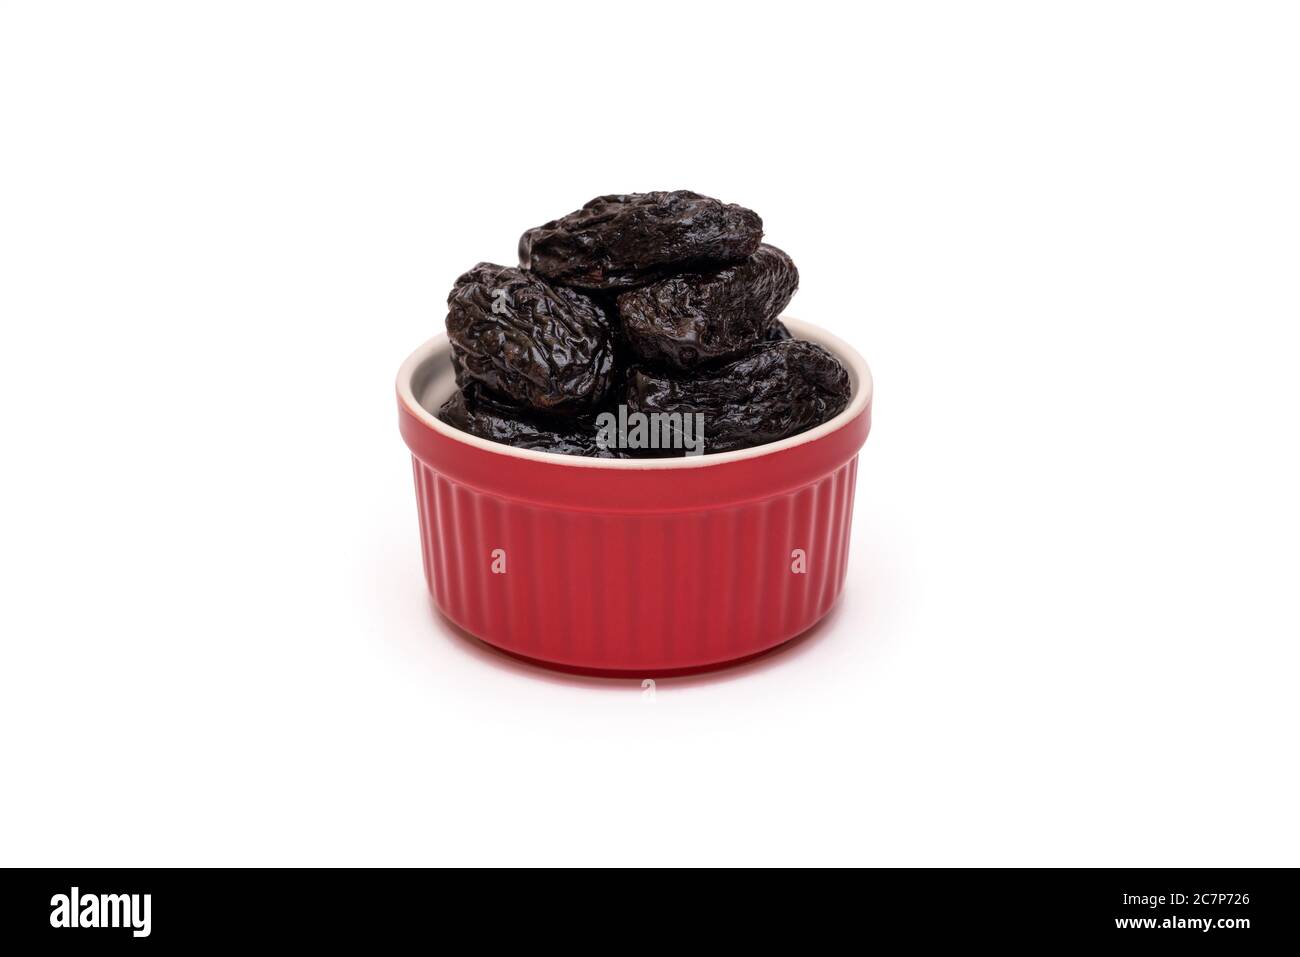 Pruneaux ou prunes séchées dans un bol en céramique rouge sur fond blanc. Concept de bonbons naturels sains. Gros plan. Copier l'espace Banque D'Images